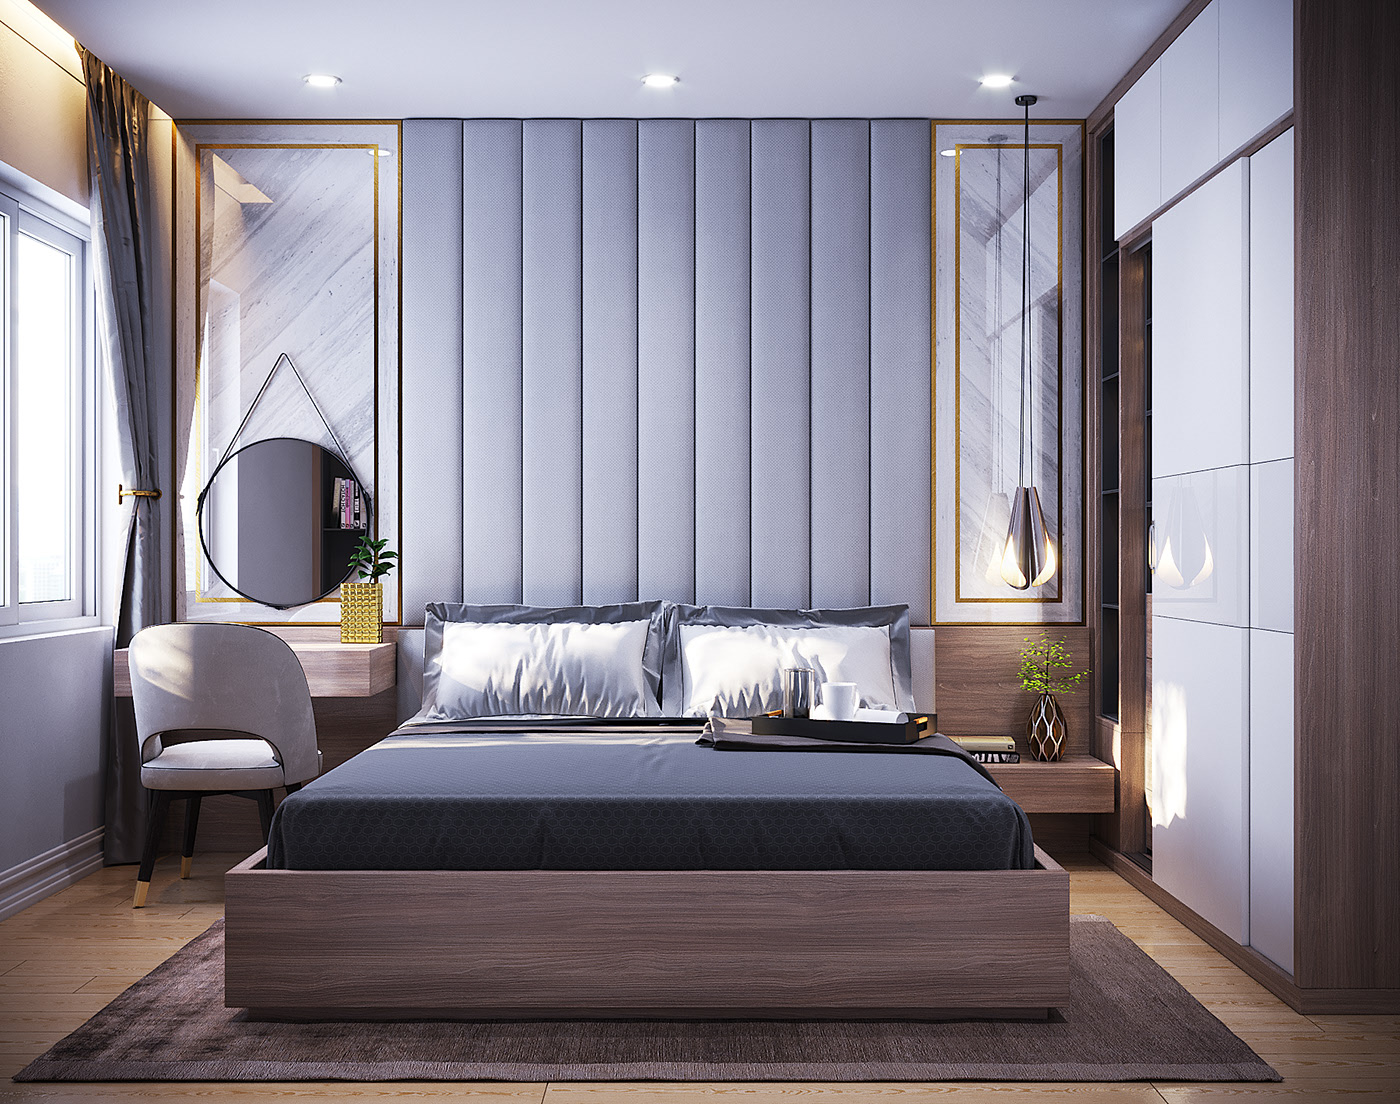 Mẫu thiết kế nhà 70m2 với 3 phòng ngủ hiện đại, đẹp nhất 2022